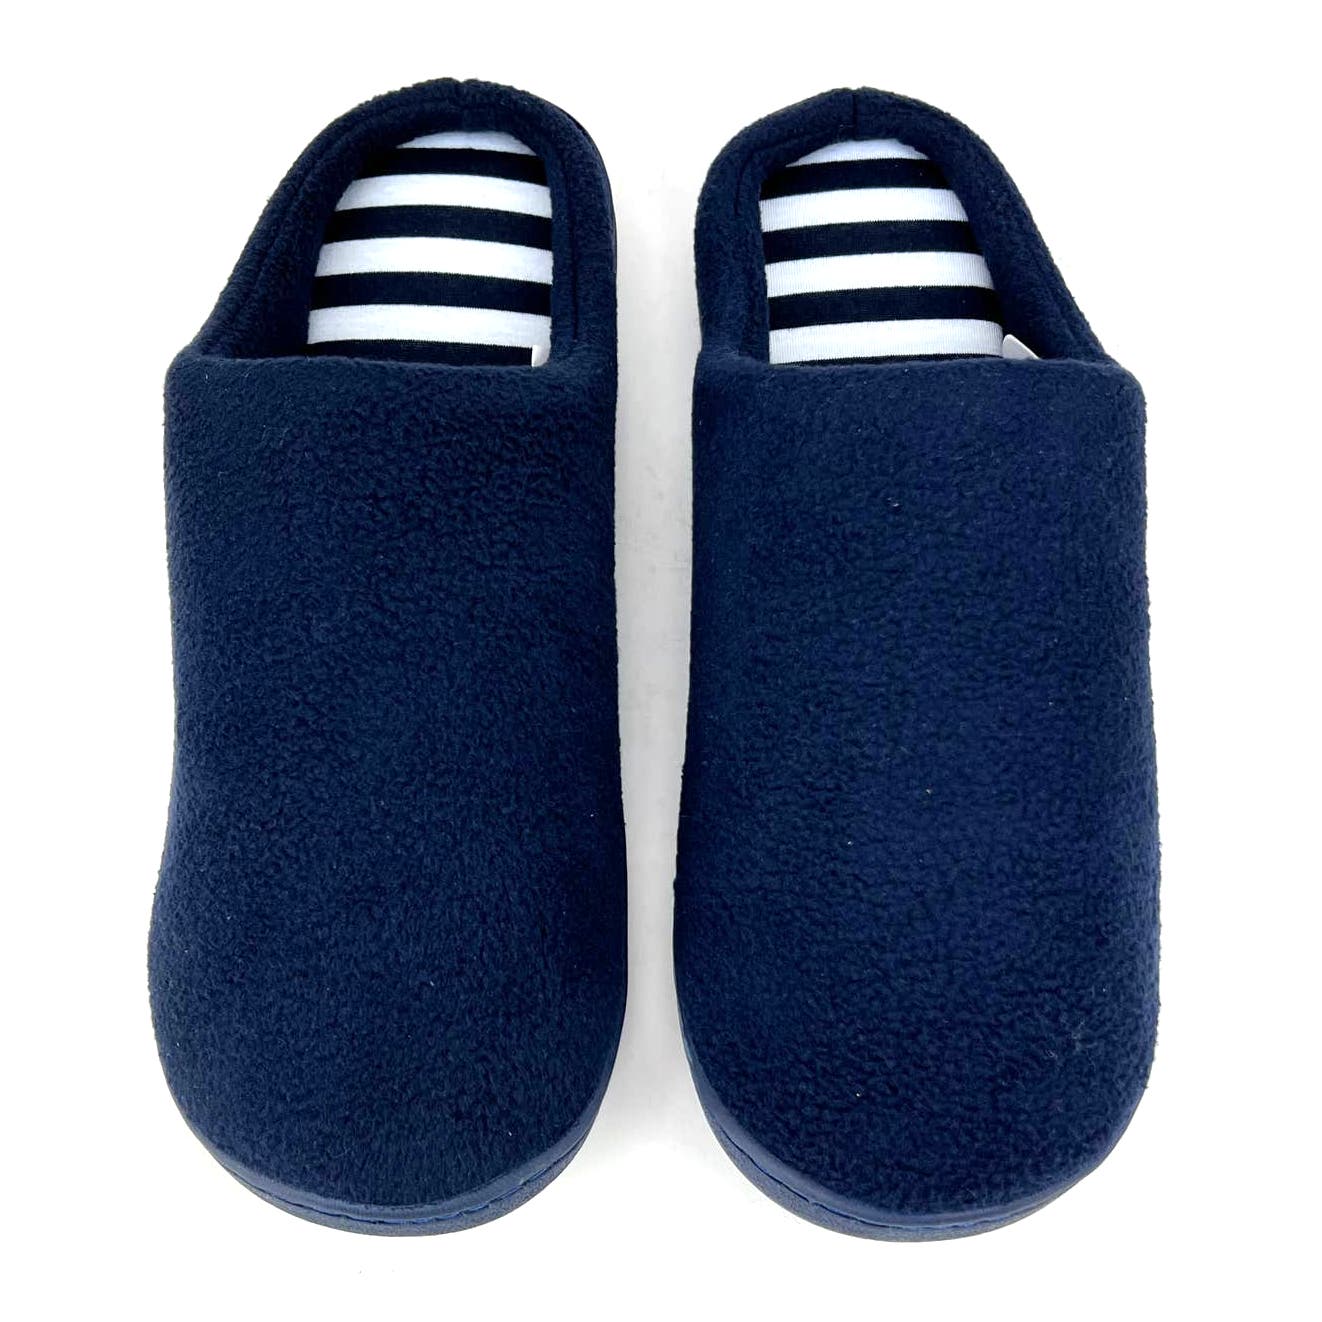 Gold Toe Men XL (12-13) Fleece Scuff Warm Plush Navy Mule Slides Shoes